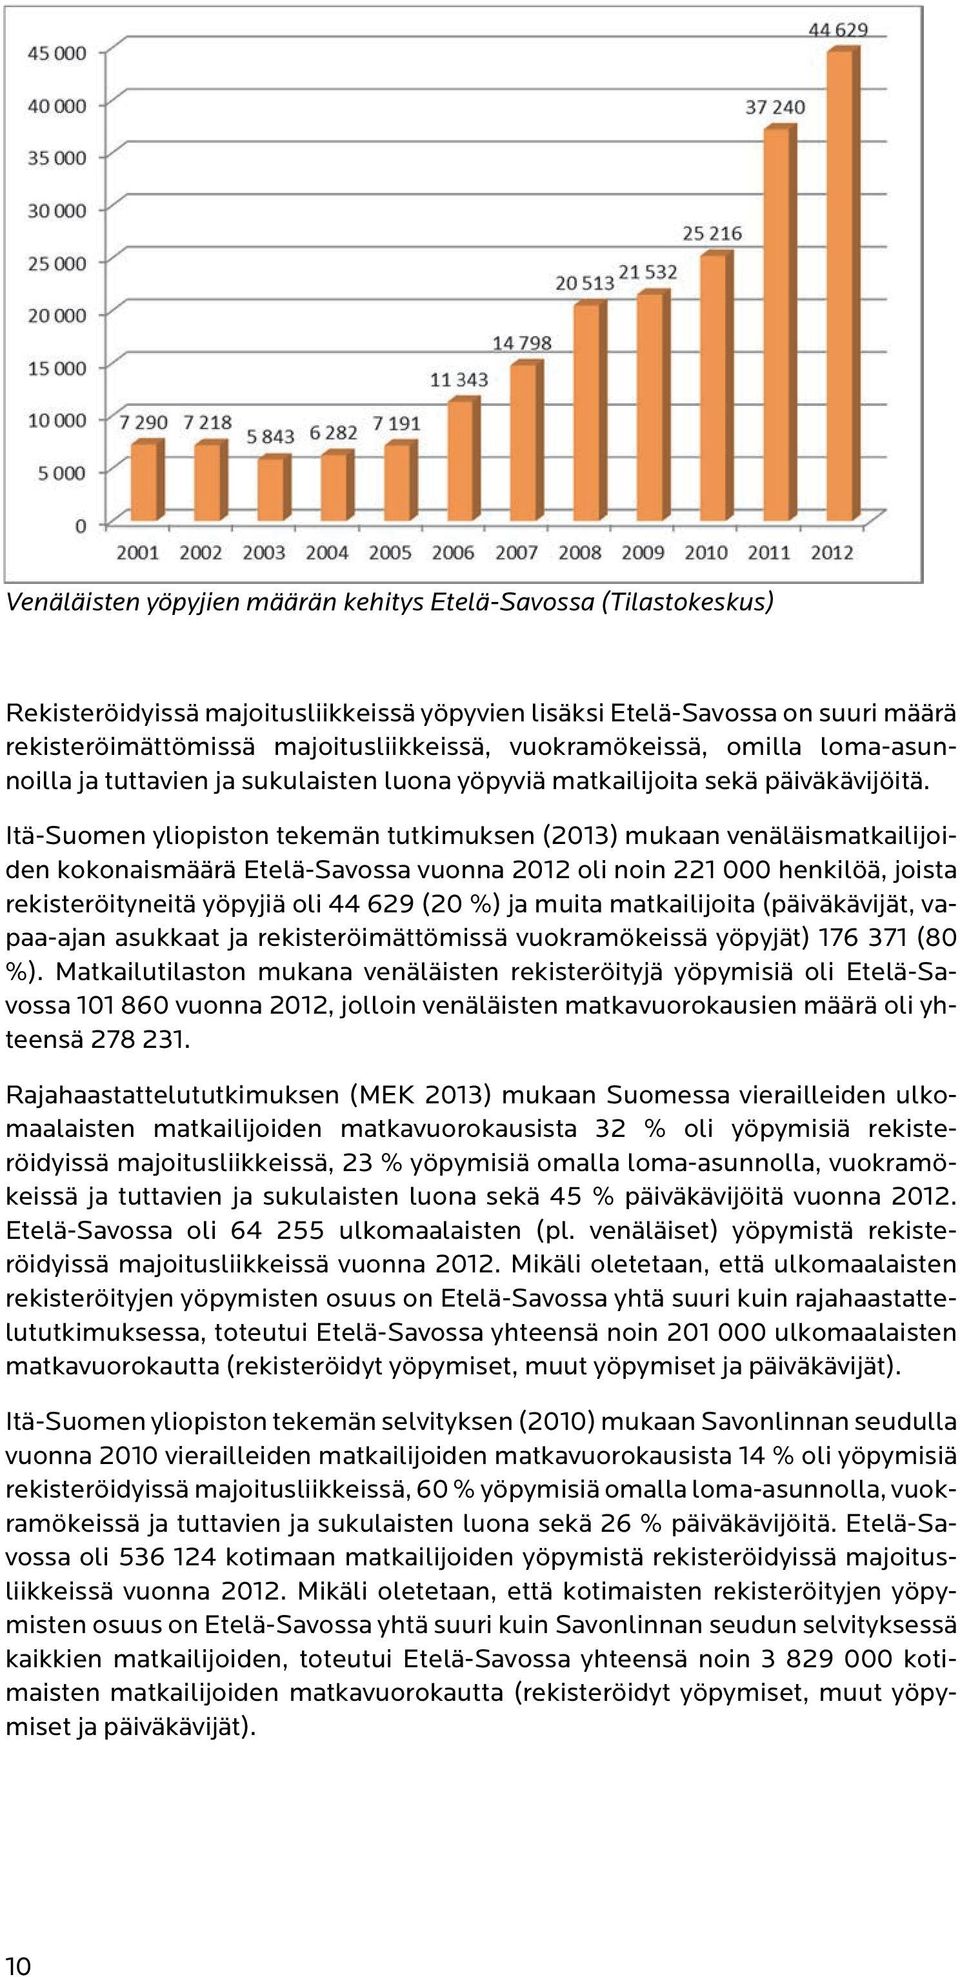 Itä-Suomen yliopiston tekemän tutkimuksen (2013) mukaan venäläismatkailijoiden kokonaismäärä Etelä-Savossa vuonna 2012 oli noin 221 000 henkilöä, joista rekisteröityneitä yöpyjiä oli 44 629 (20 %) ja